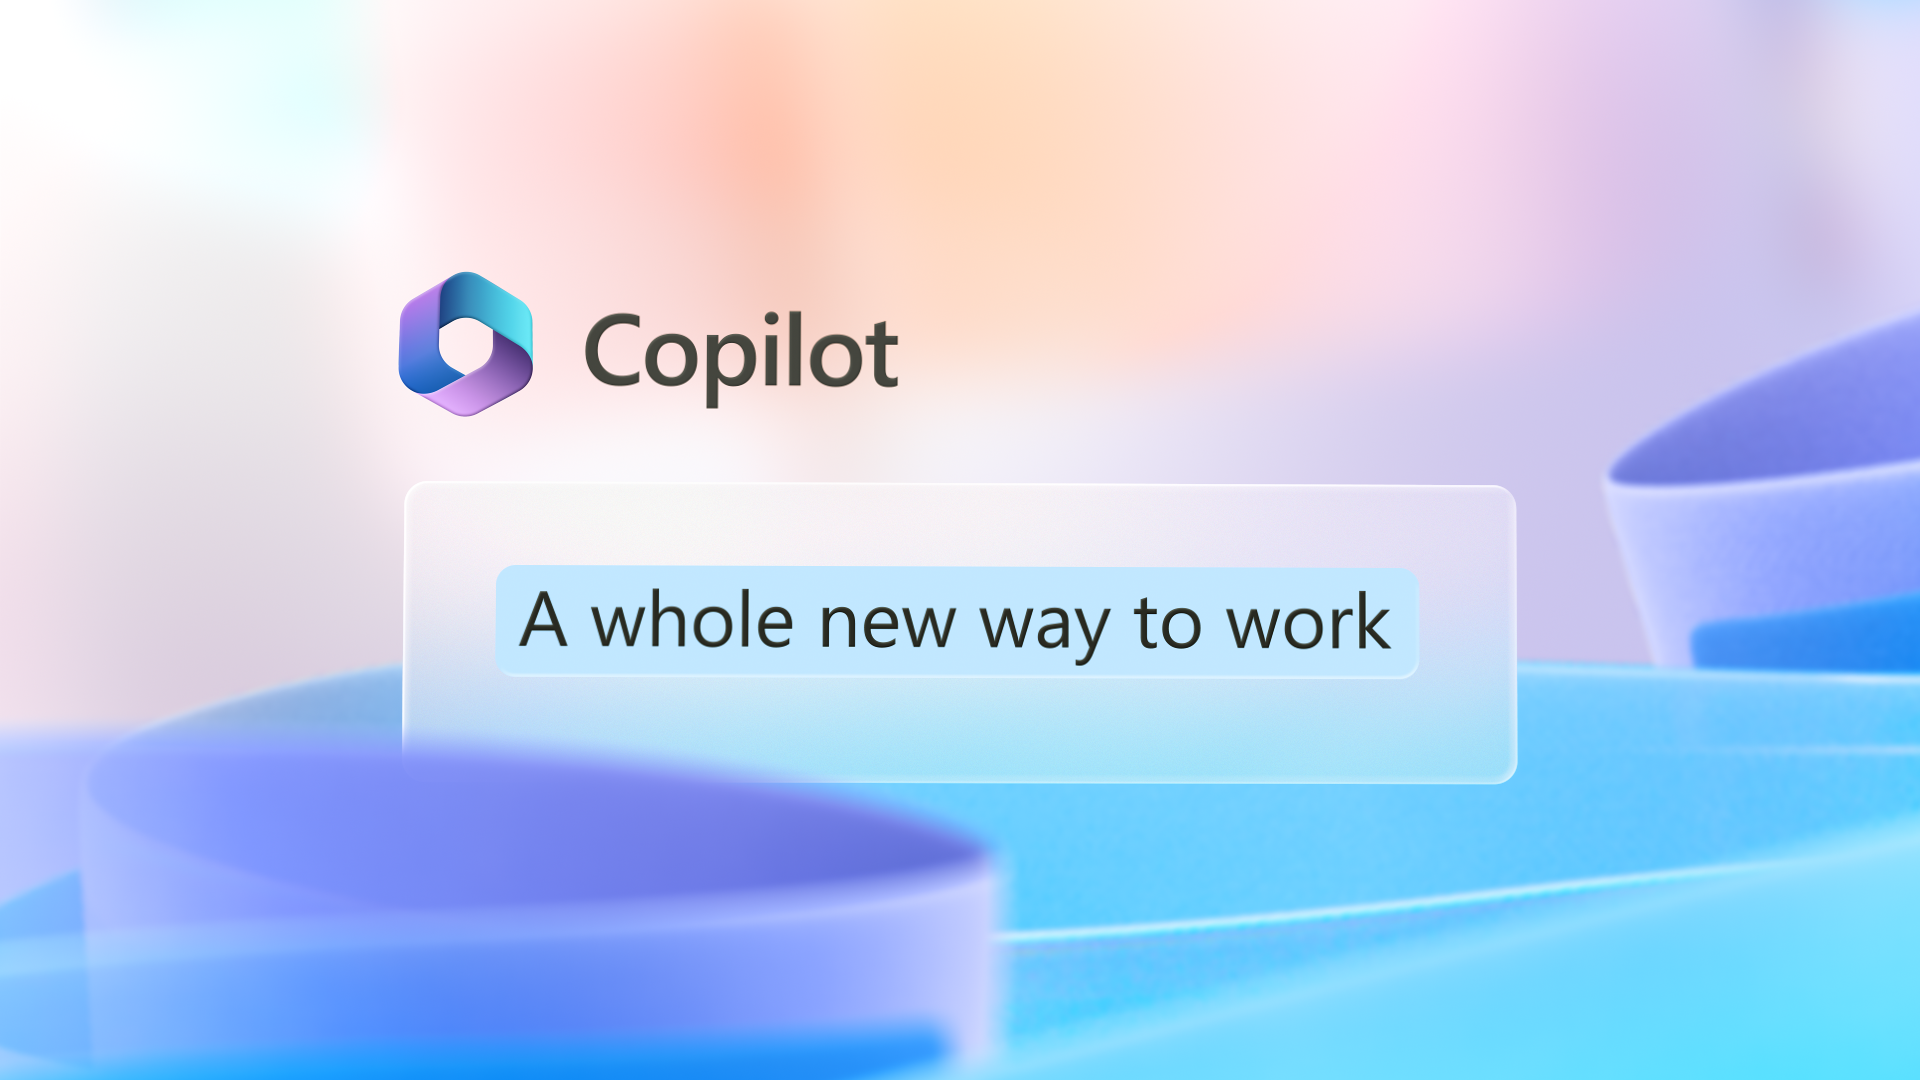 Grafična slika ima logotip rešitve Copilot z besedami Povsem nov način dela.